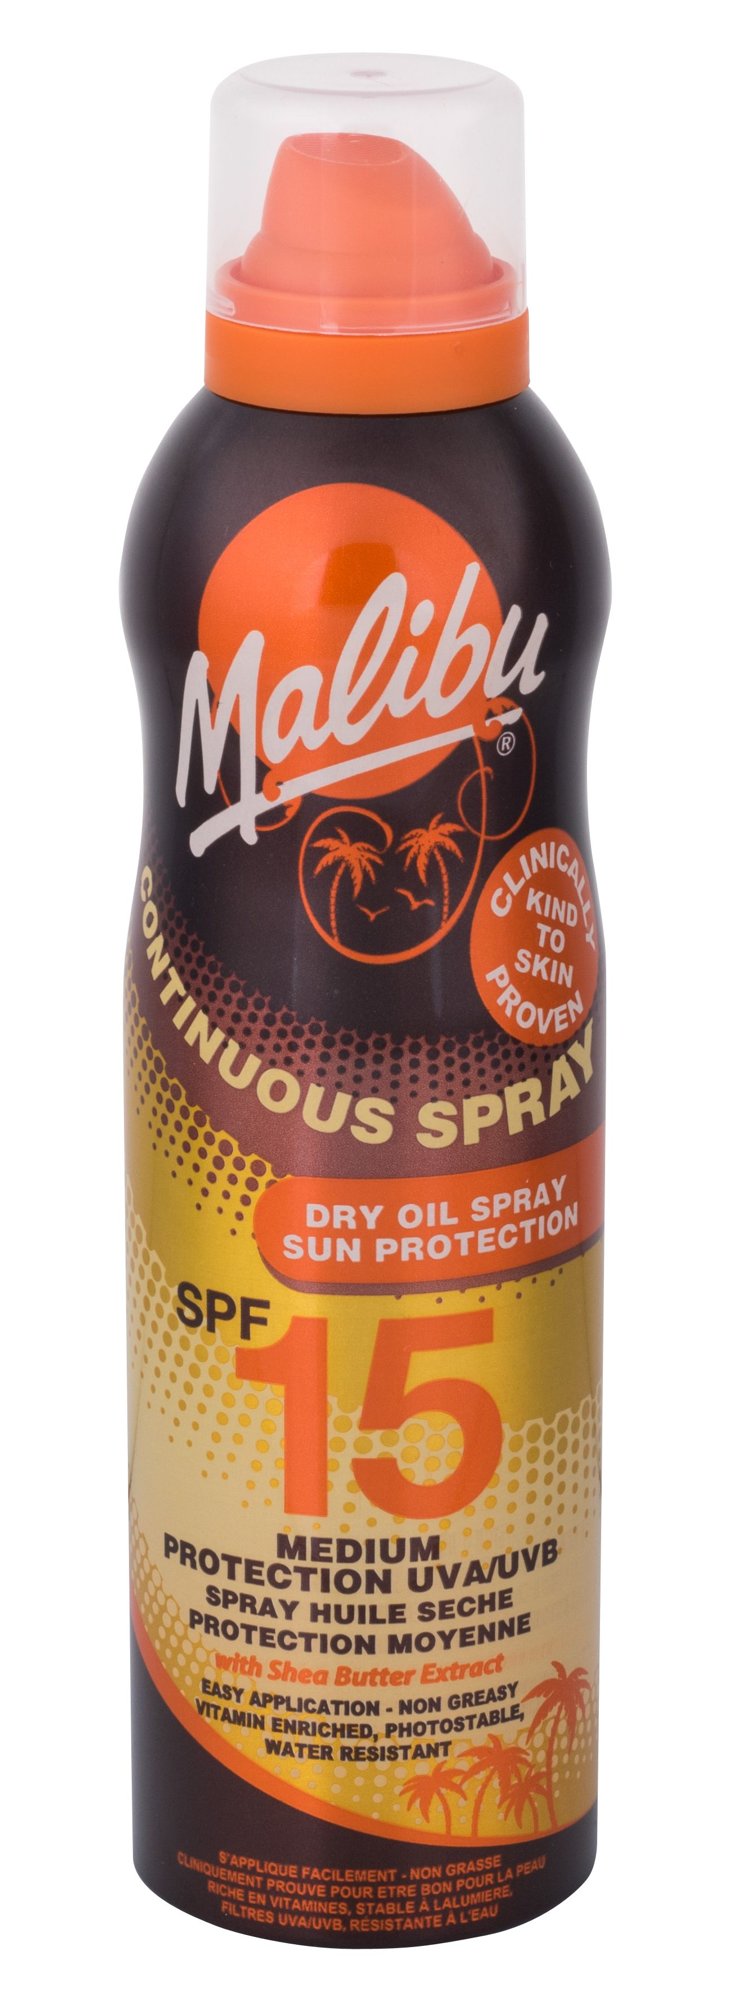 Malibu Continuous Spray Dry Oil 175ml įdegio losjonas (Pažeista pakuotė)